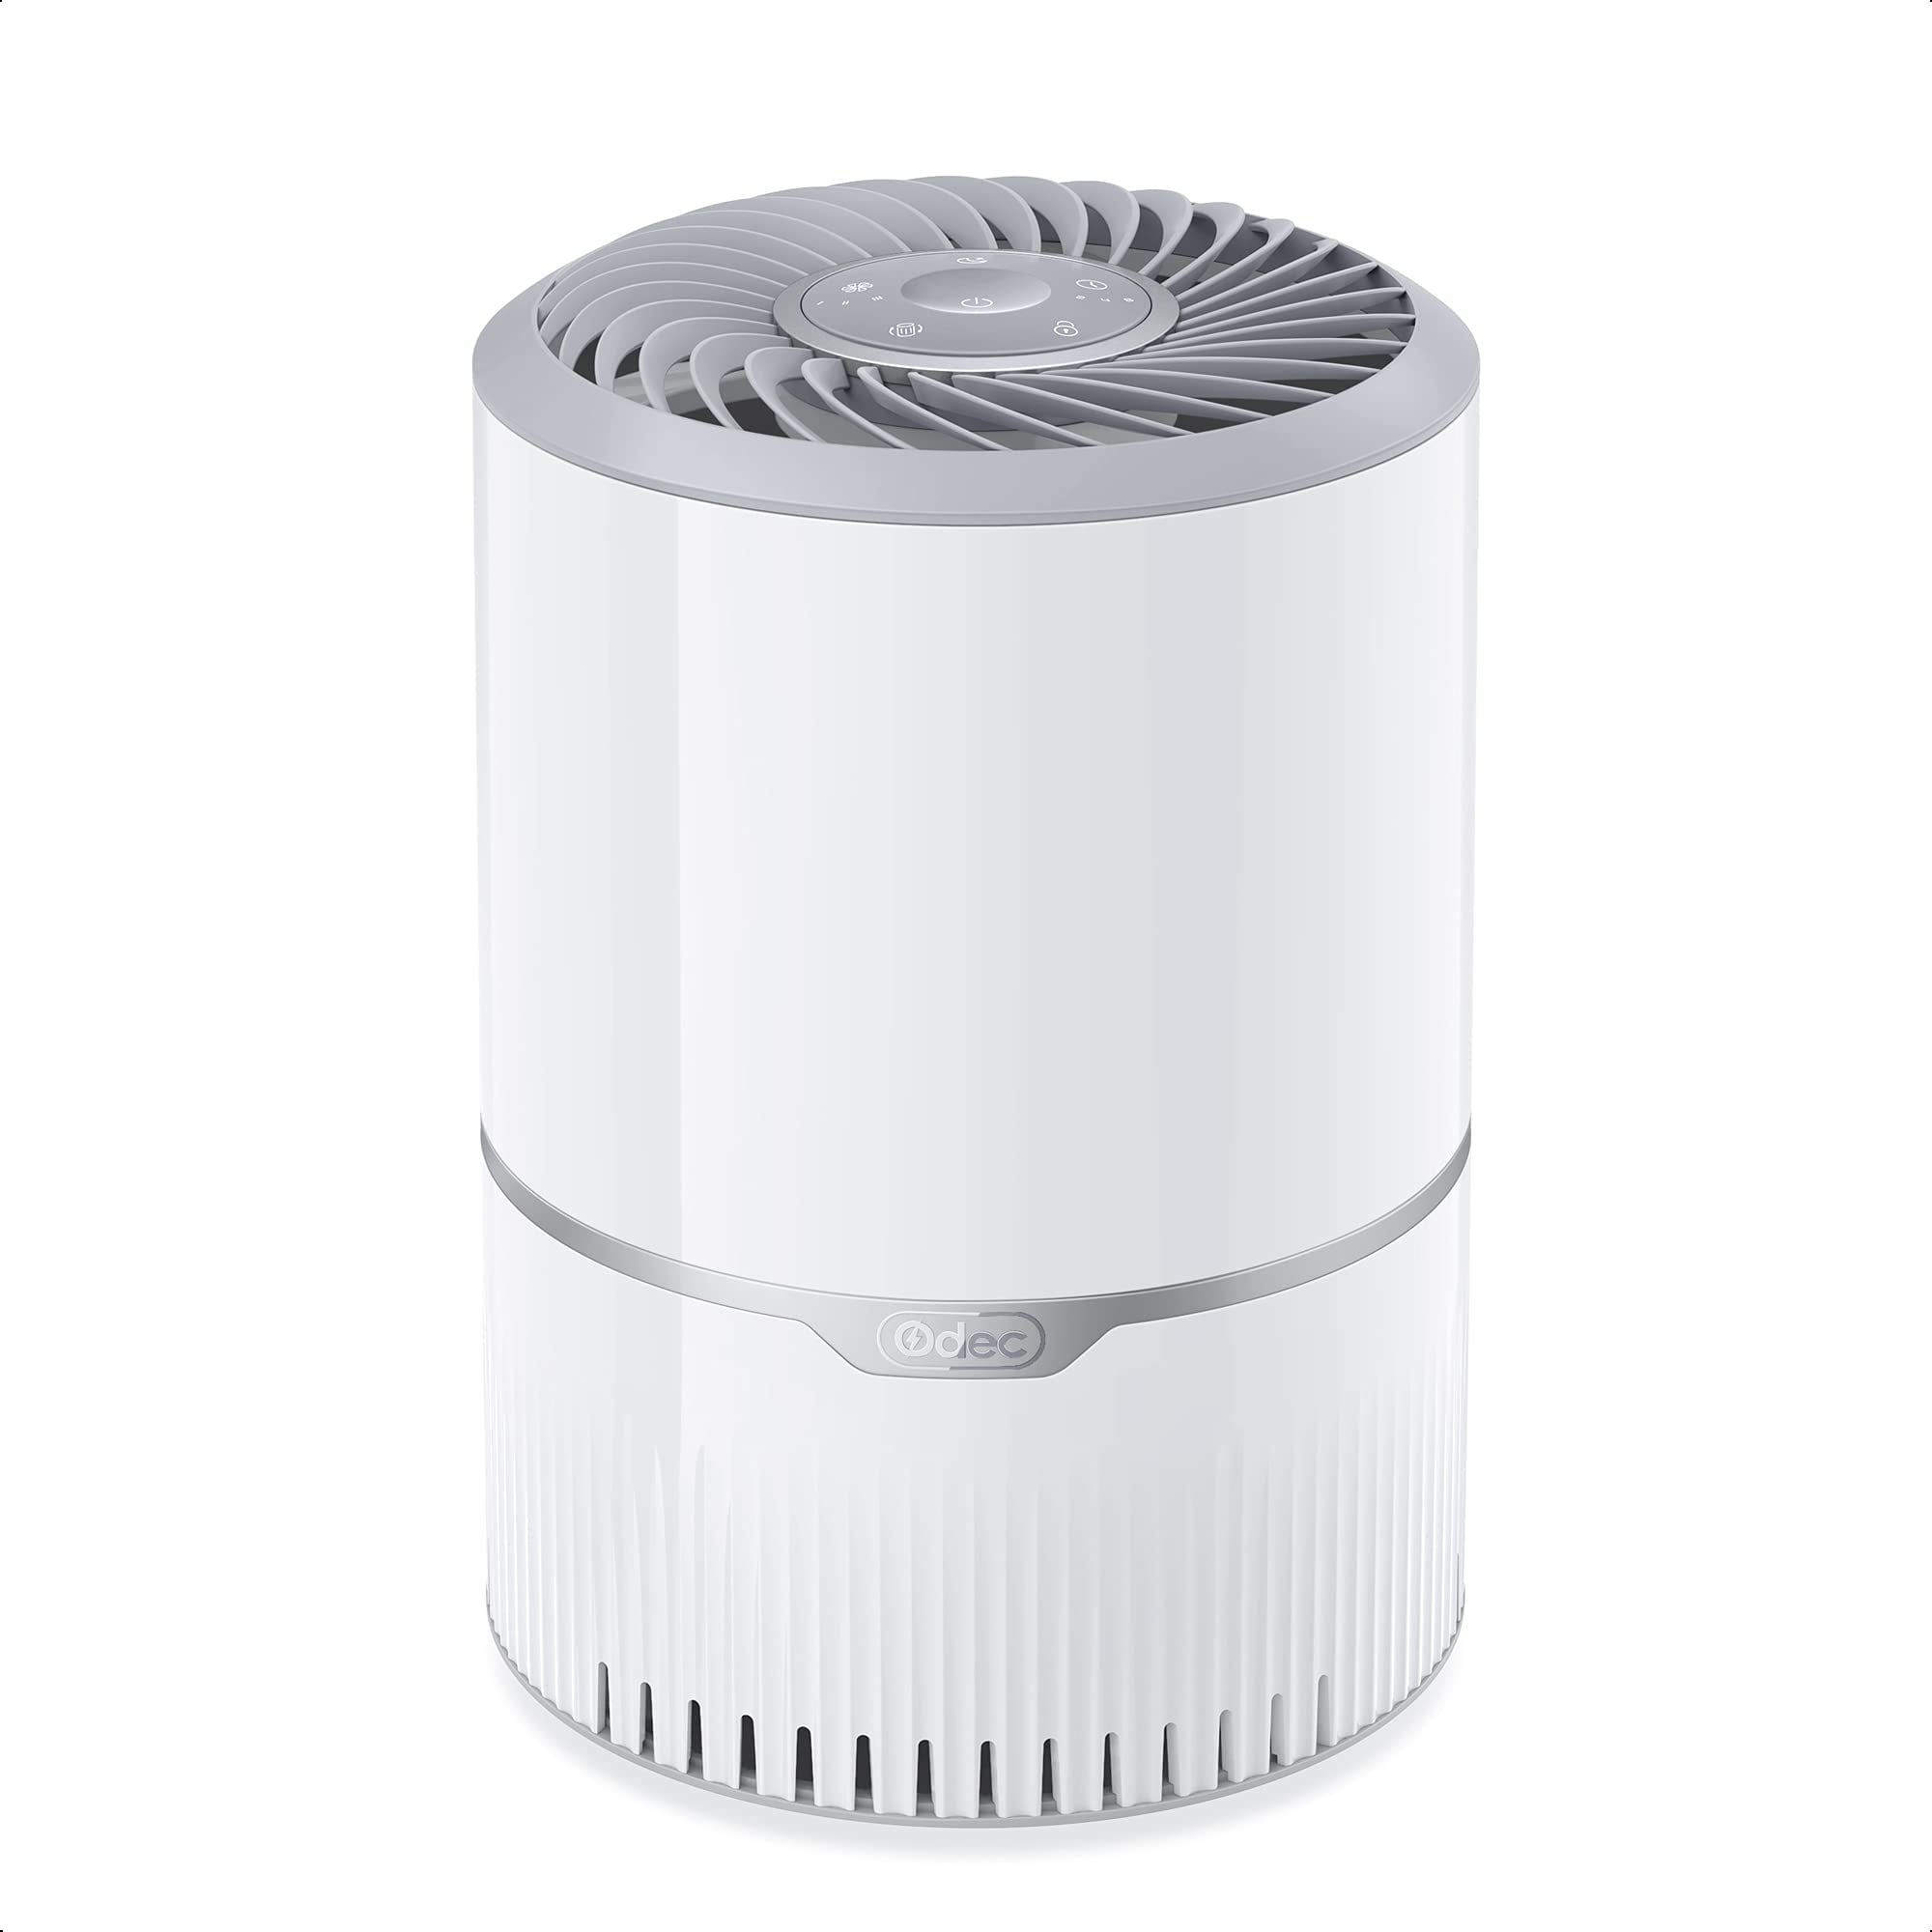 ODEC Air Purifier H13 Ture Heap Filter Remove 99.97% Dust Smoke Pollen Pet Dander